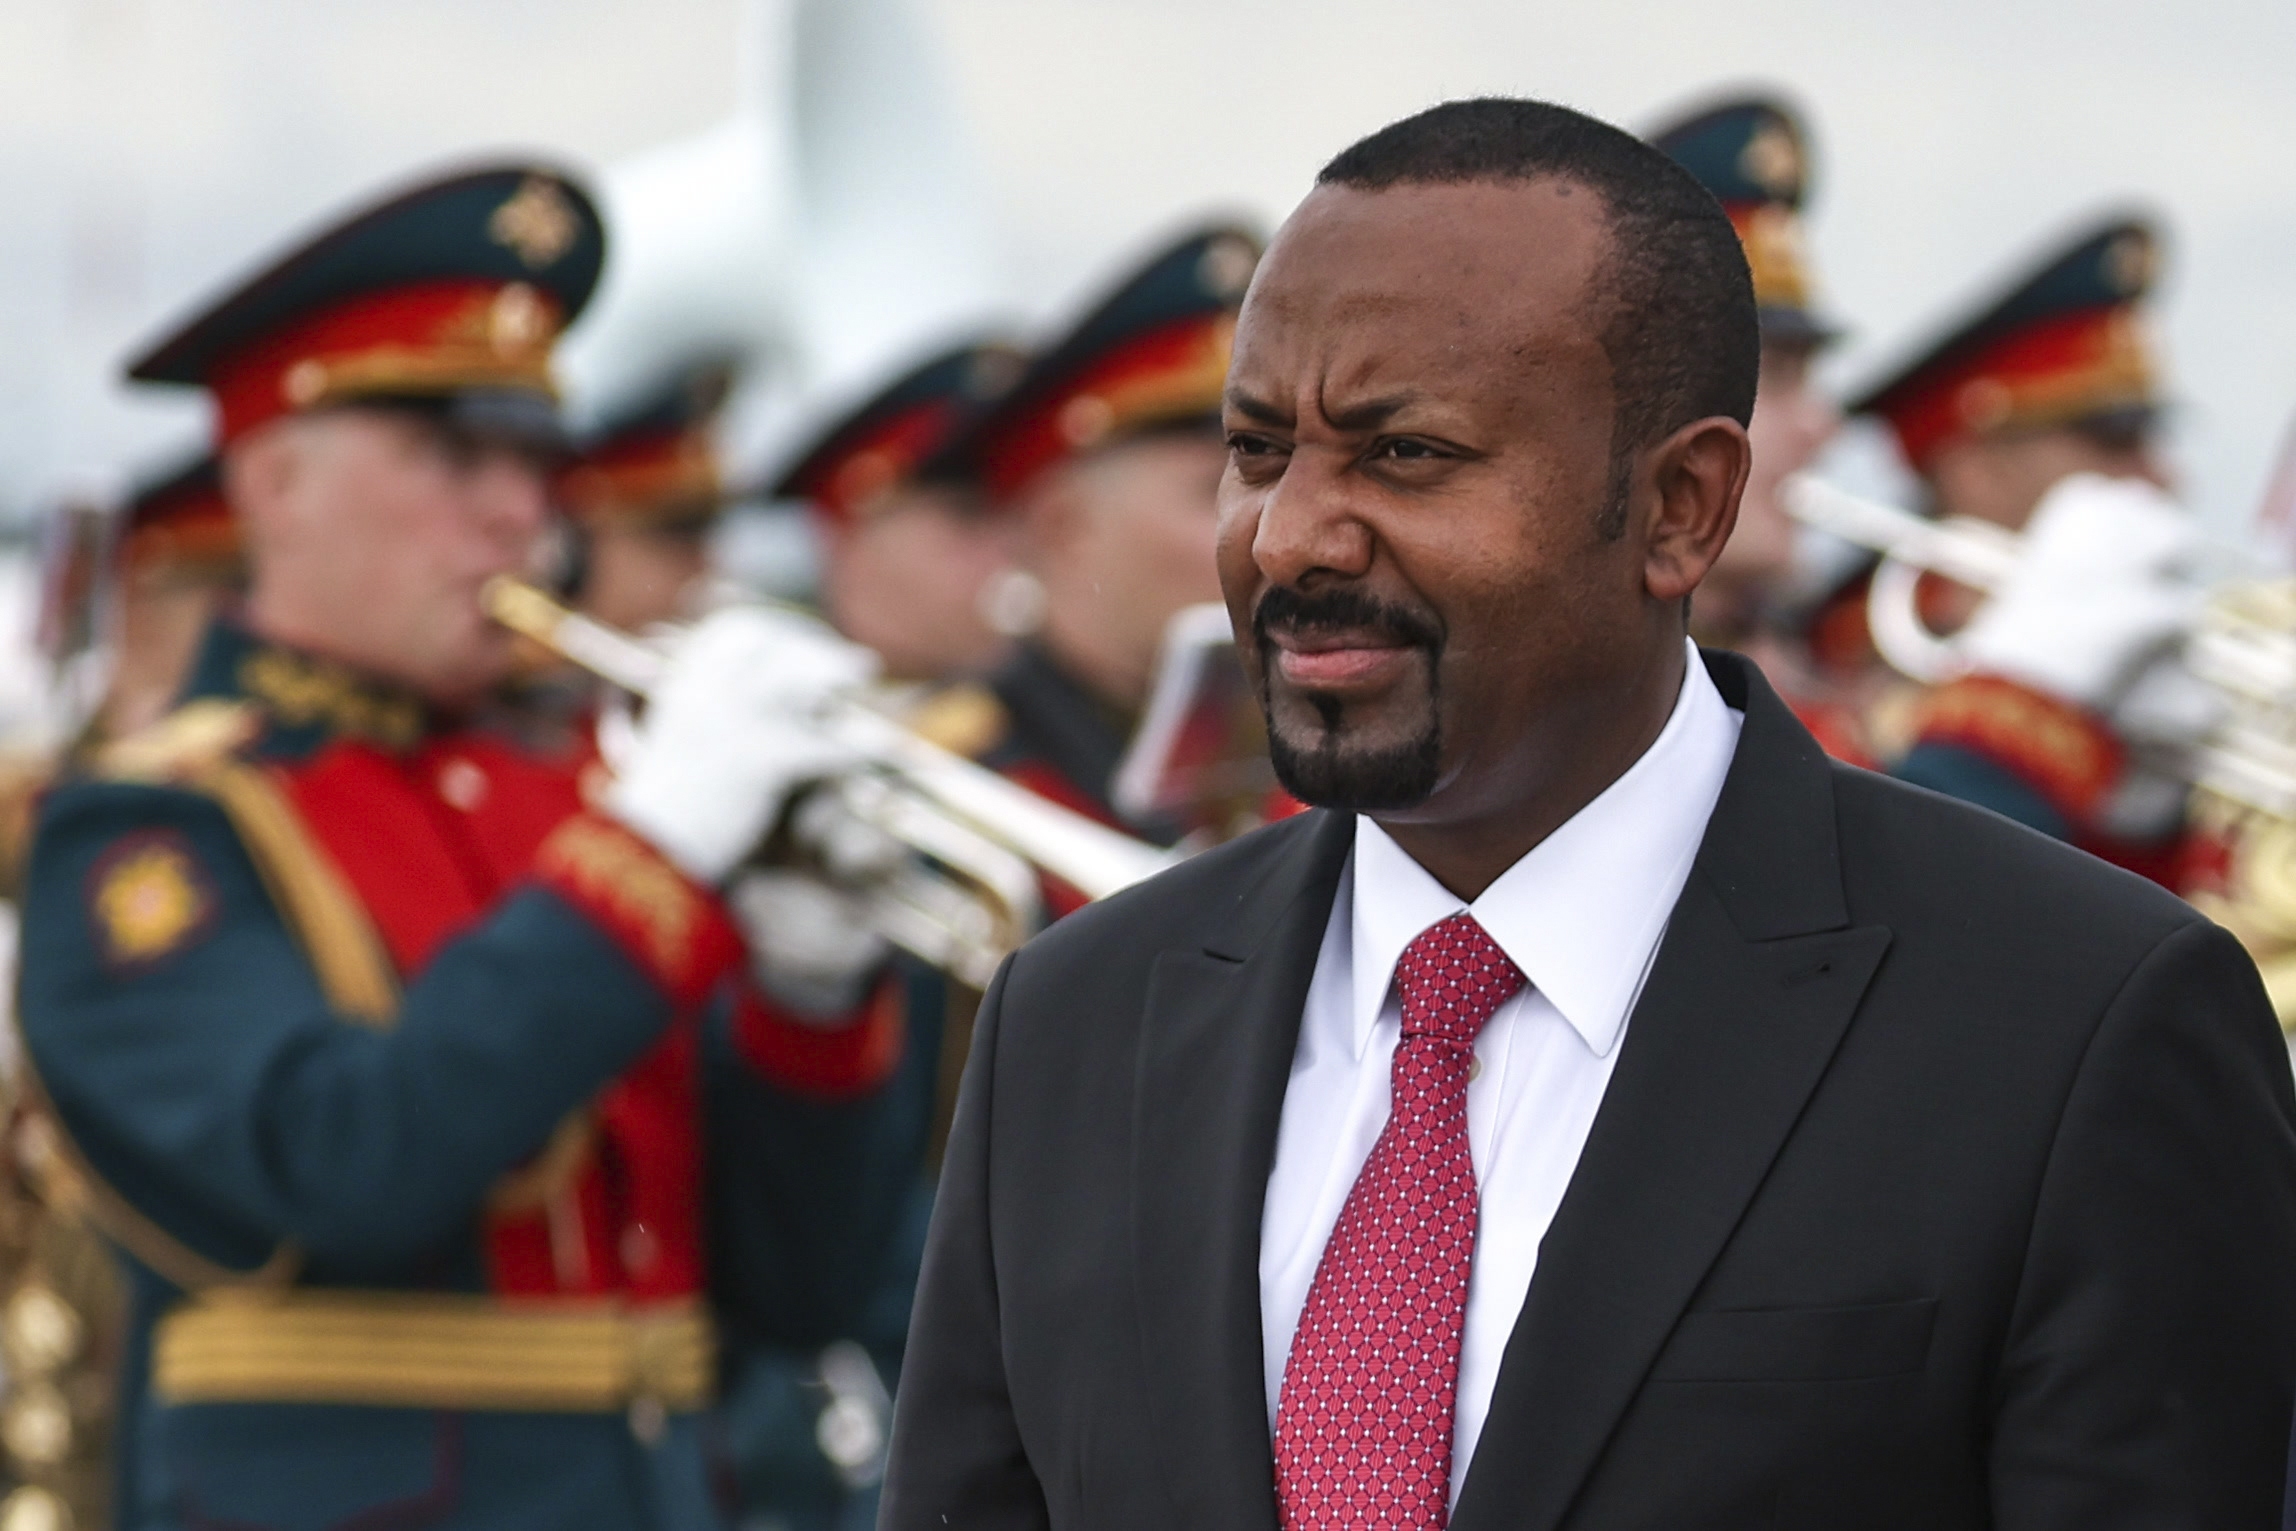 African leaders arrive in Russia for summit as Kremlin seeks allies